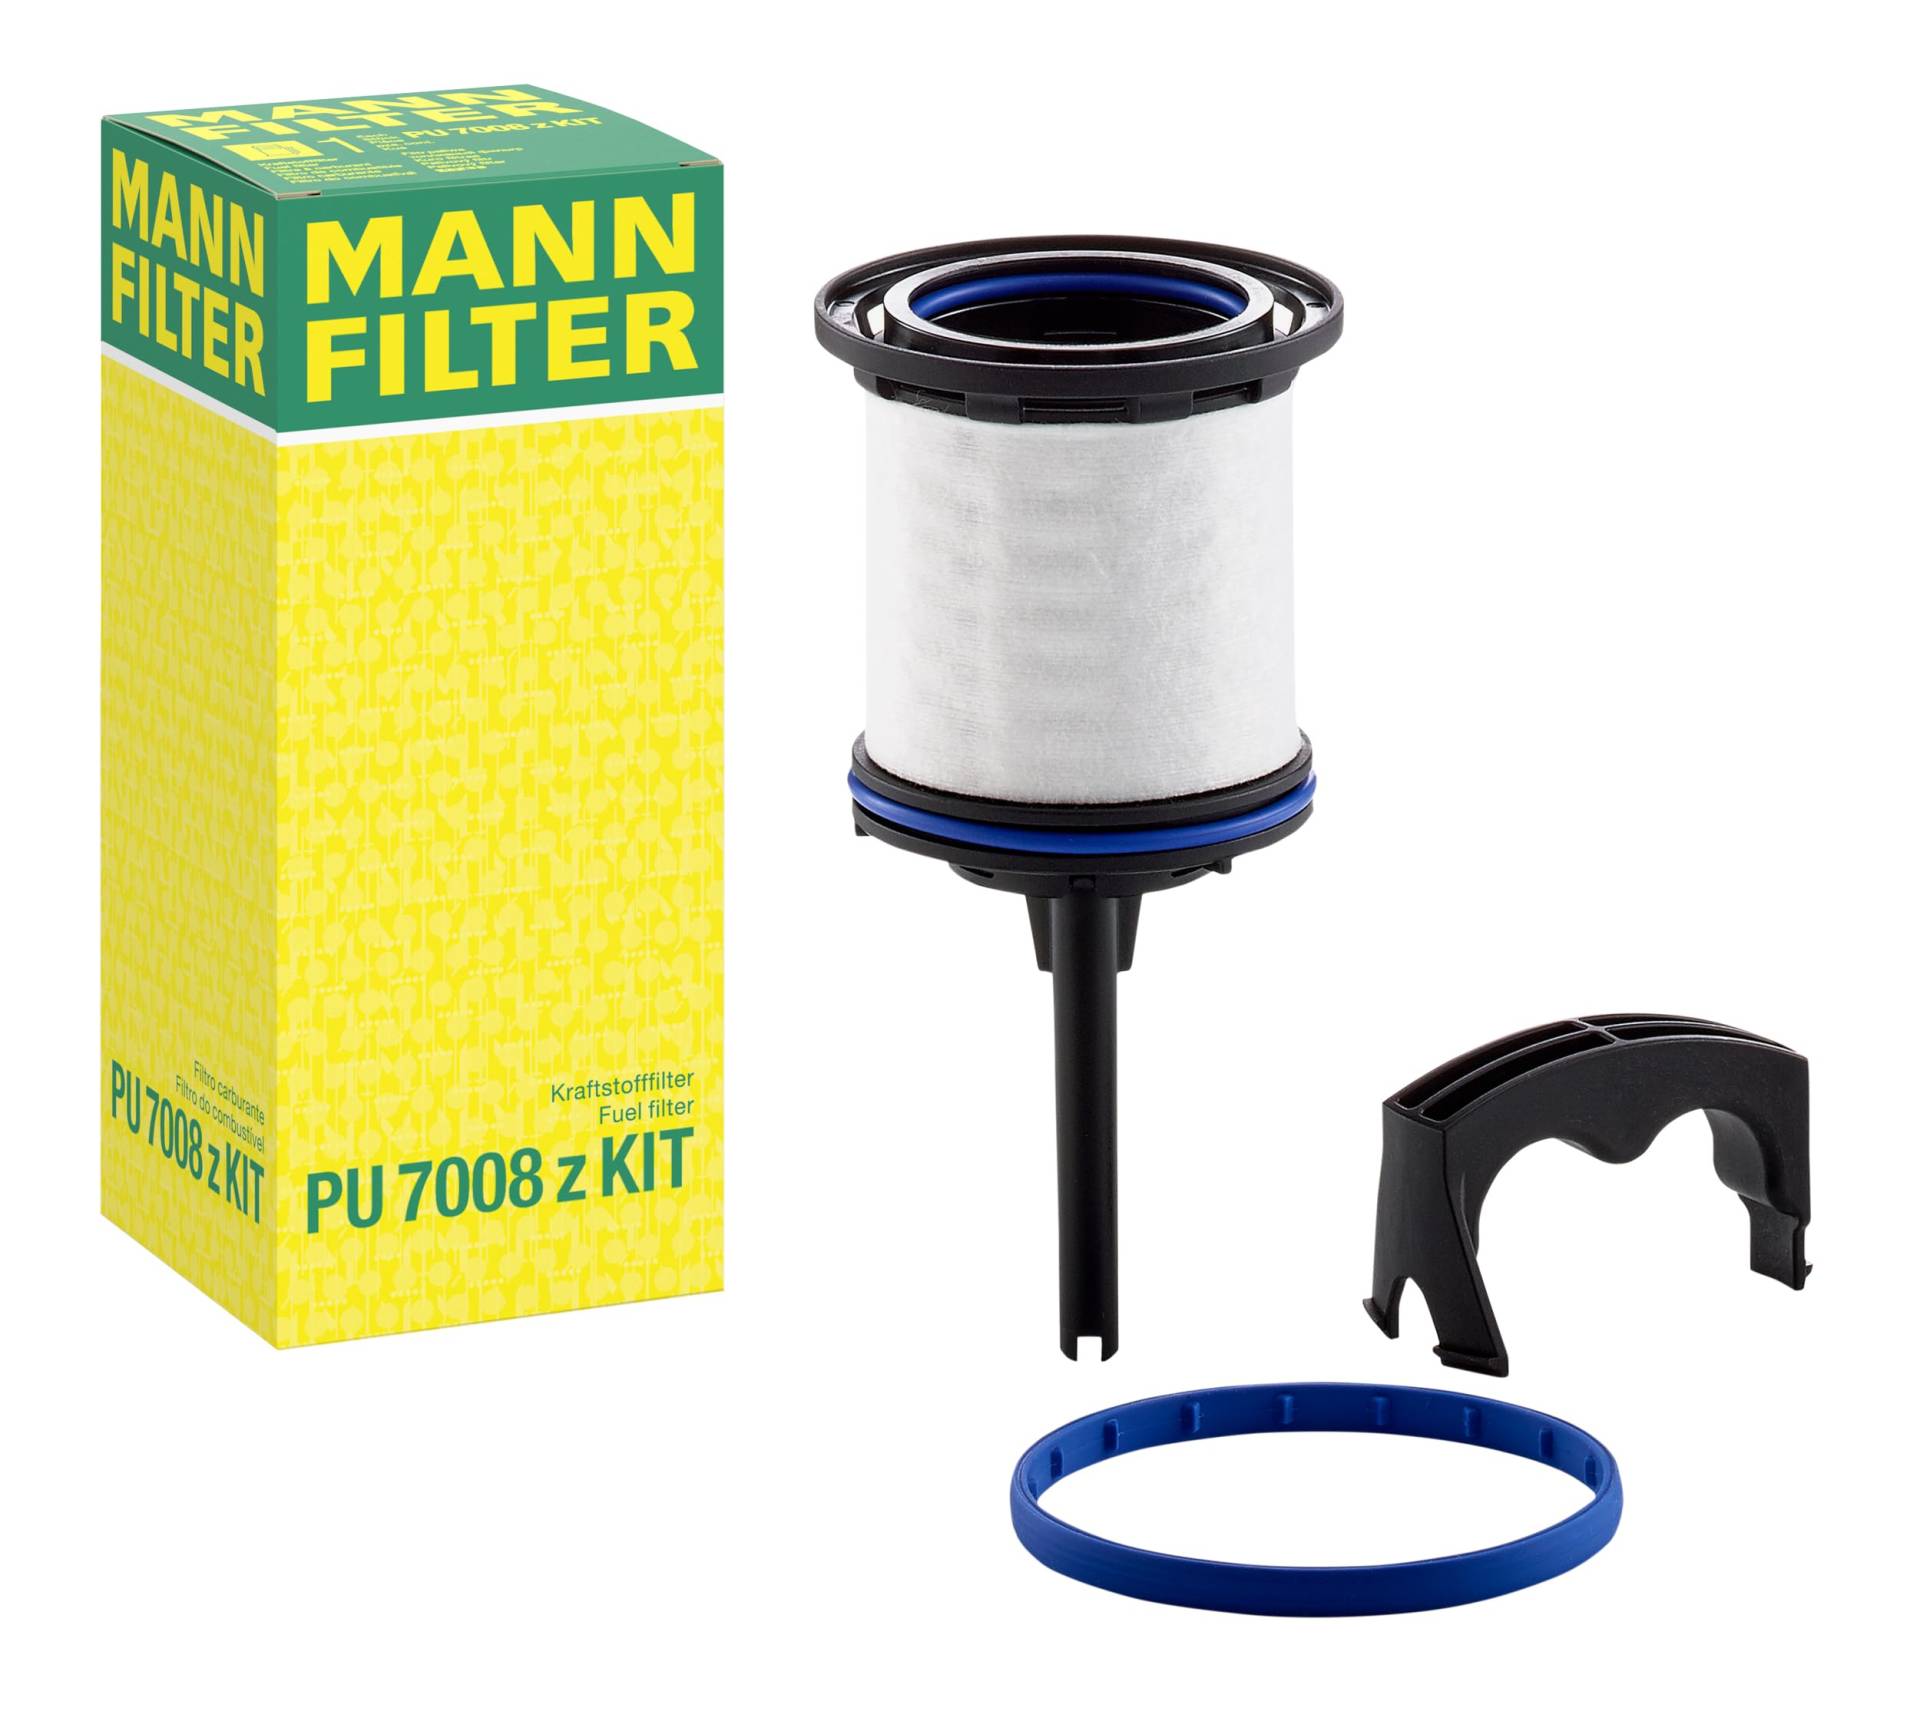 Mann-filter PU 7008 z KIT - Kraftstofffilter von MANN-FILTER